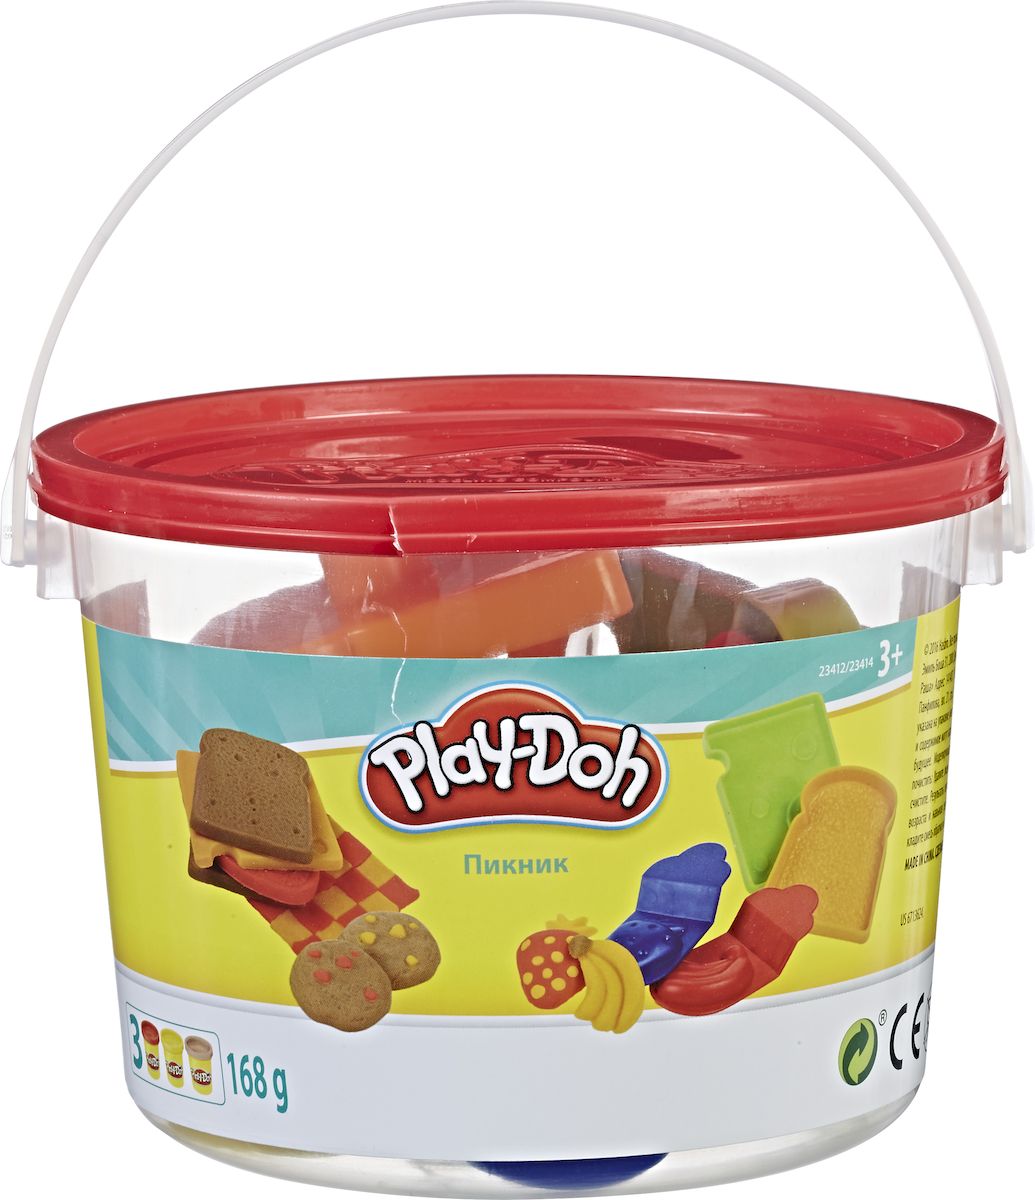 Play-Doh Набор для лепки Ведерочко Пикник